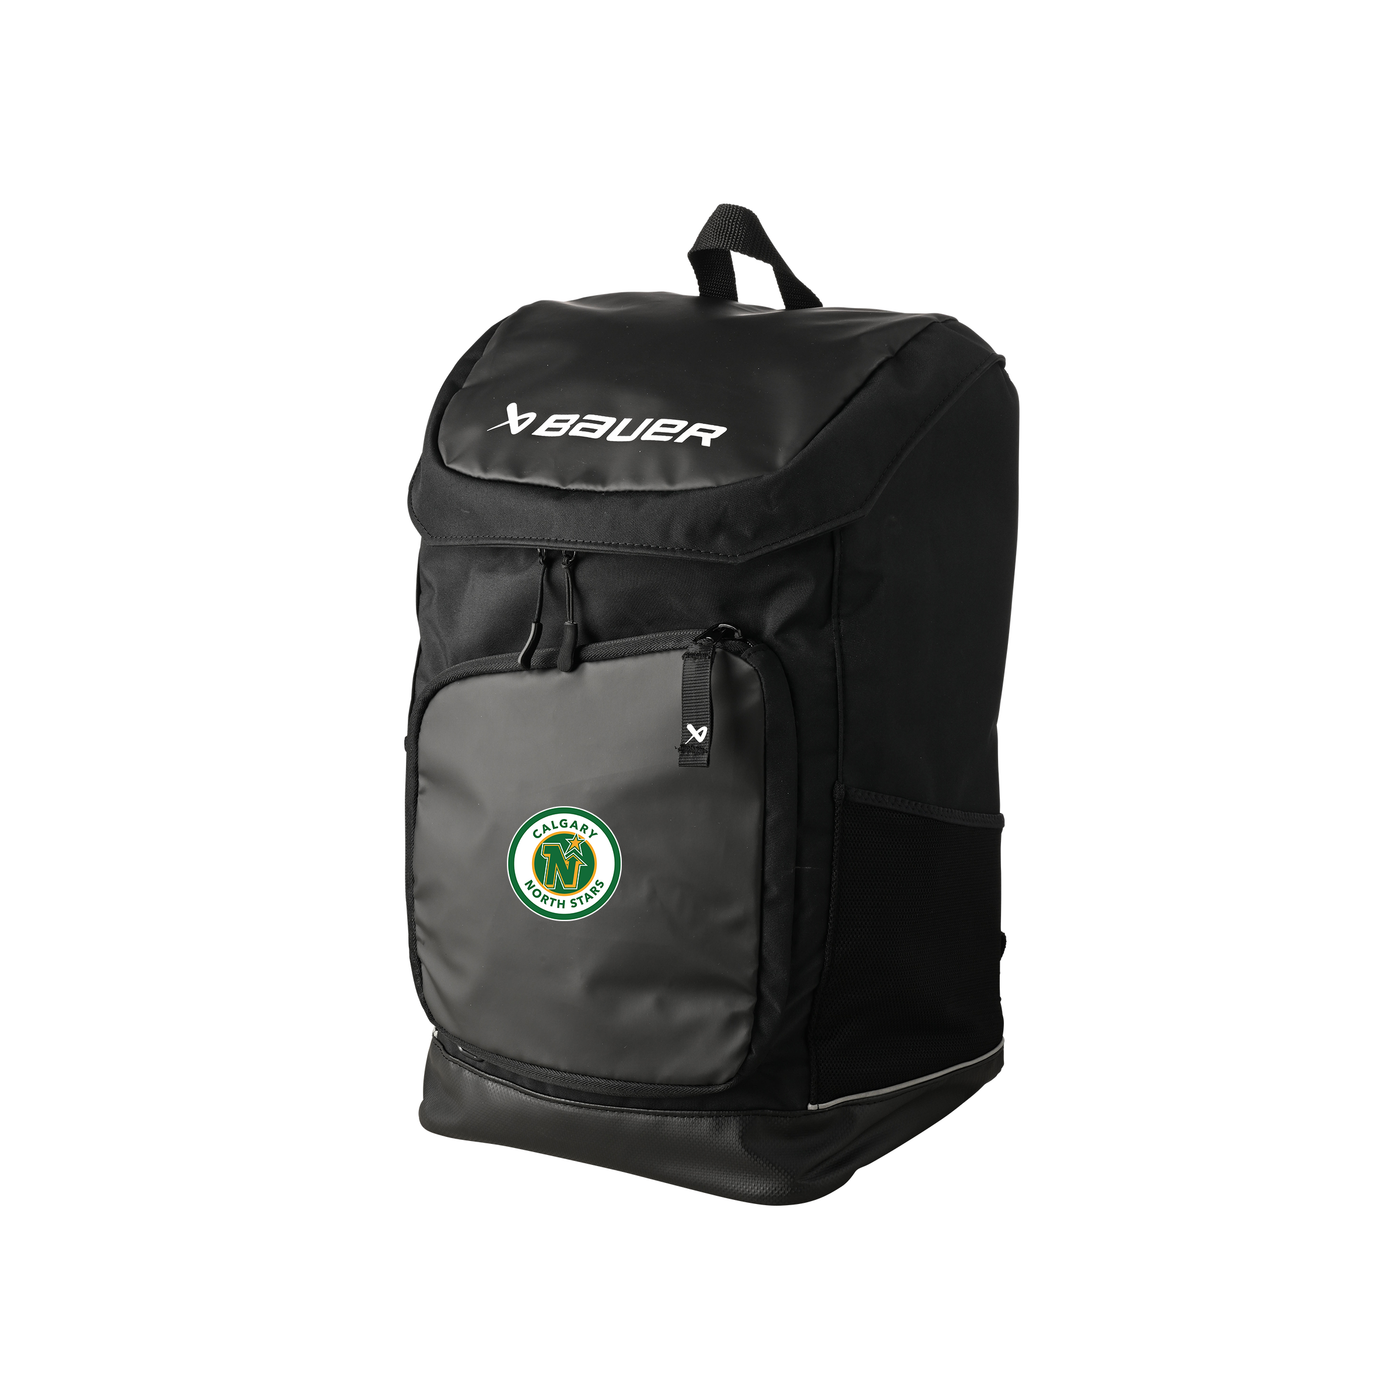 Bauer Pro Backpack - Northstars